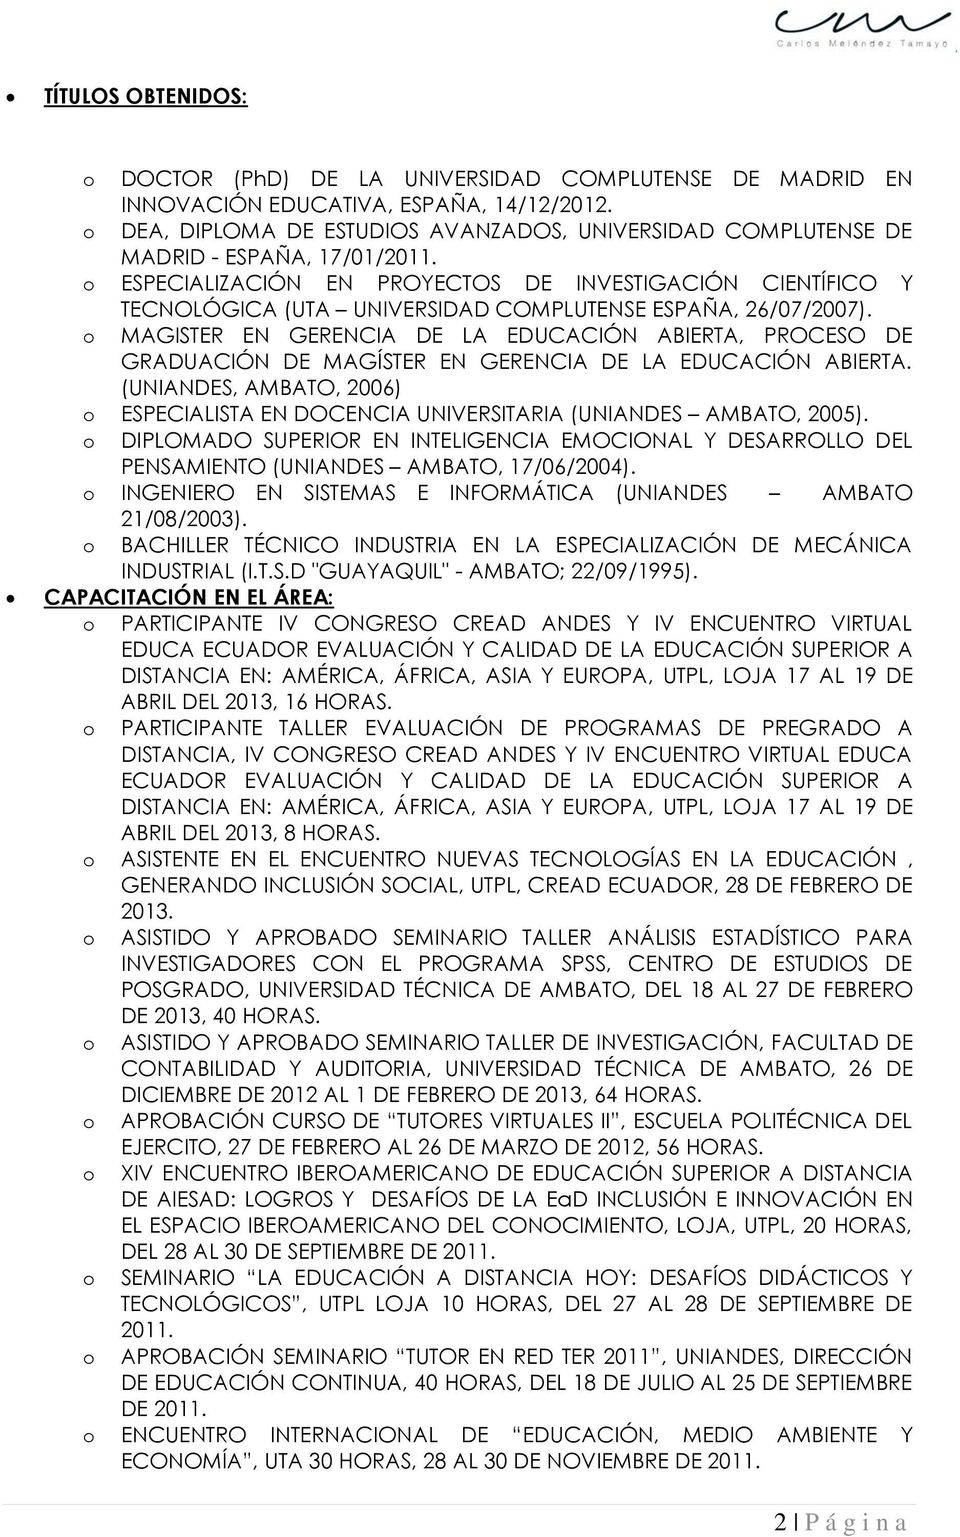 ESPECIALIZACIÓN EN PROYECTOS DE INVESTIGACIÓN CIENTÍFICO Y TECNOLÓGICA (UTA UNIVERSIDAD COMPLUTENSE ESPAÑA, 26/07/2007).